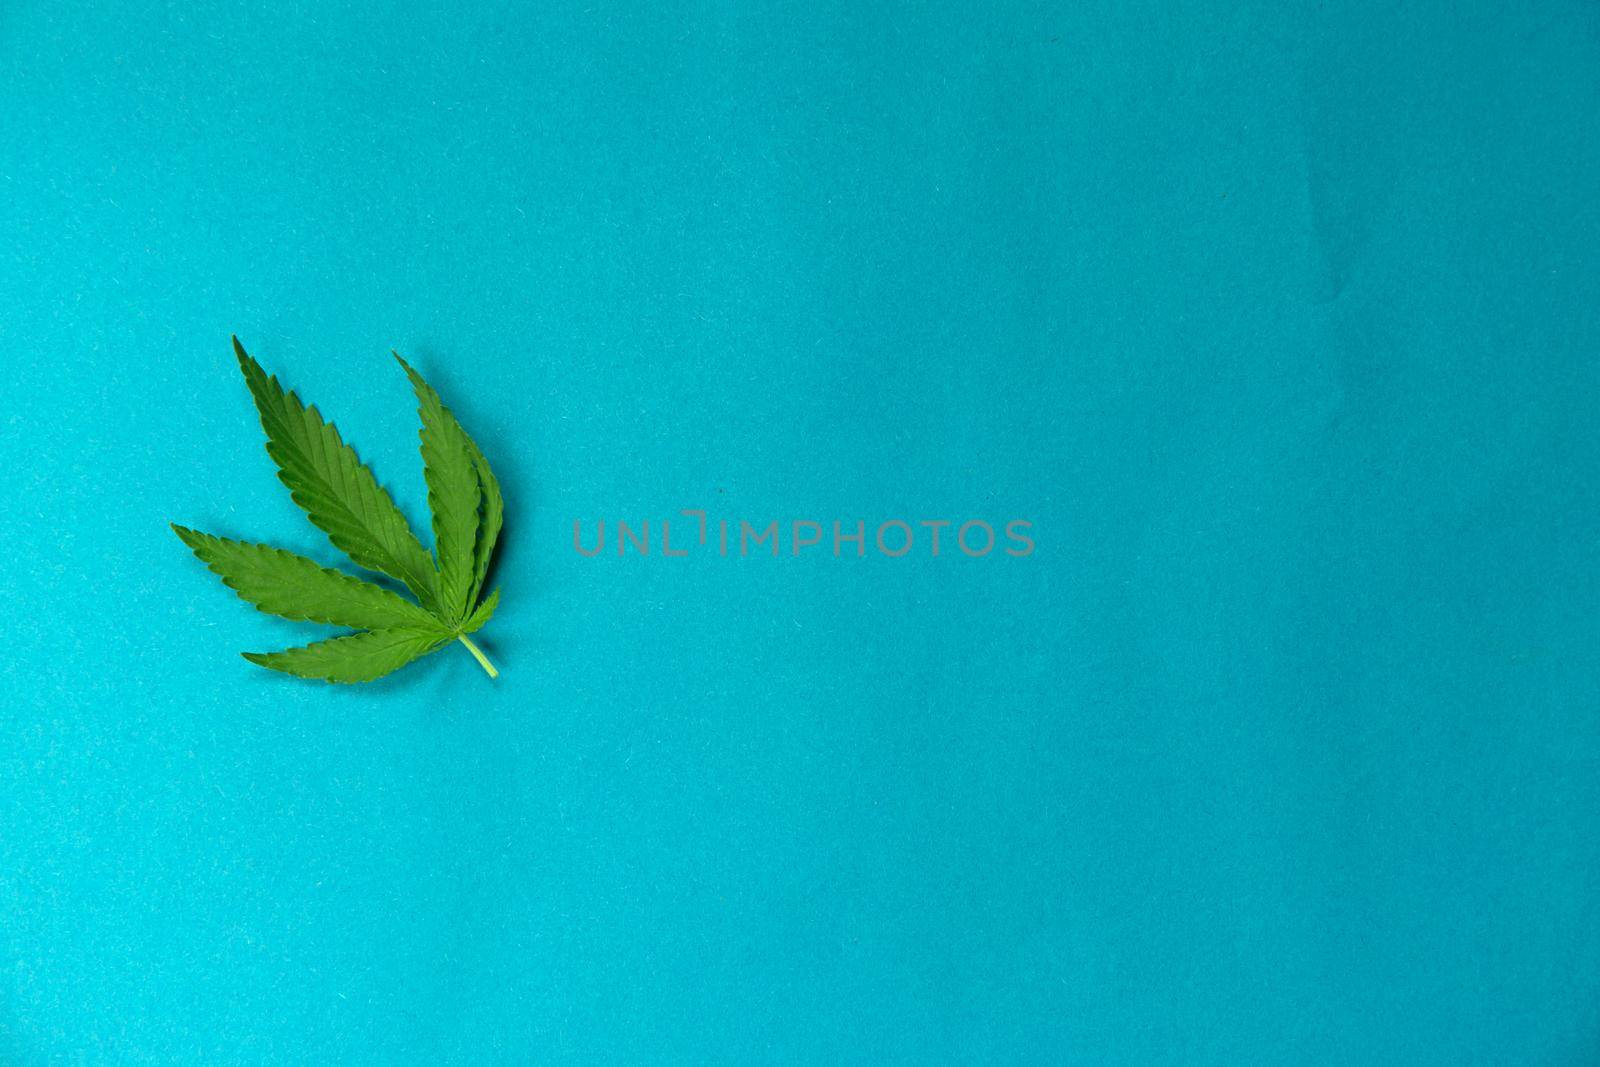 Close up fresh cannabis leaf on a blue background.